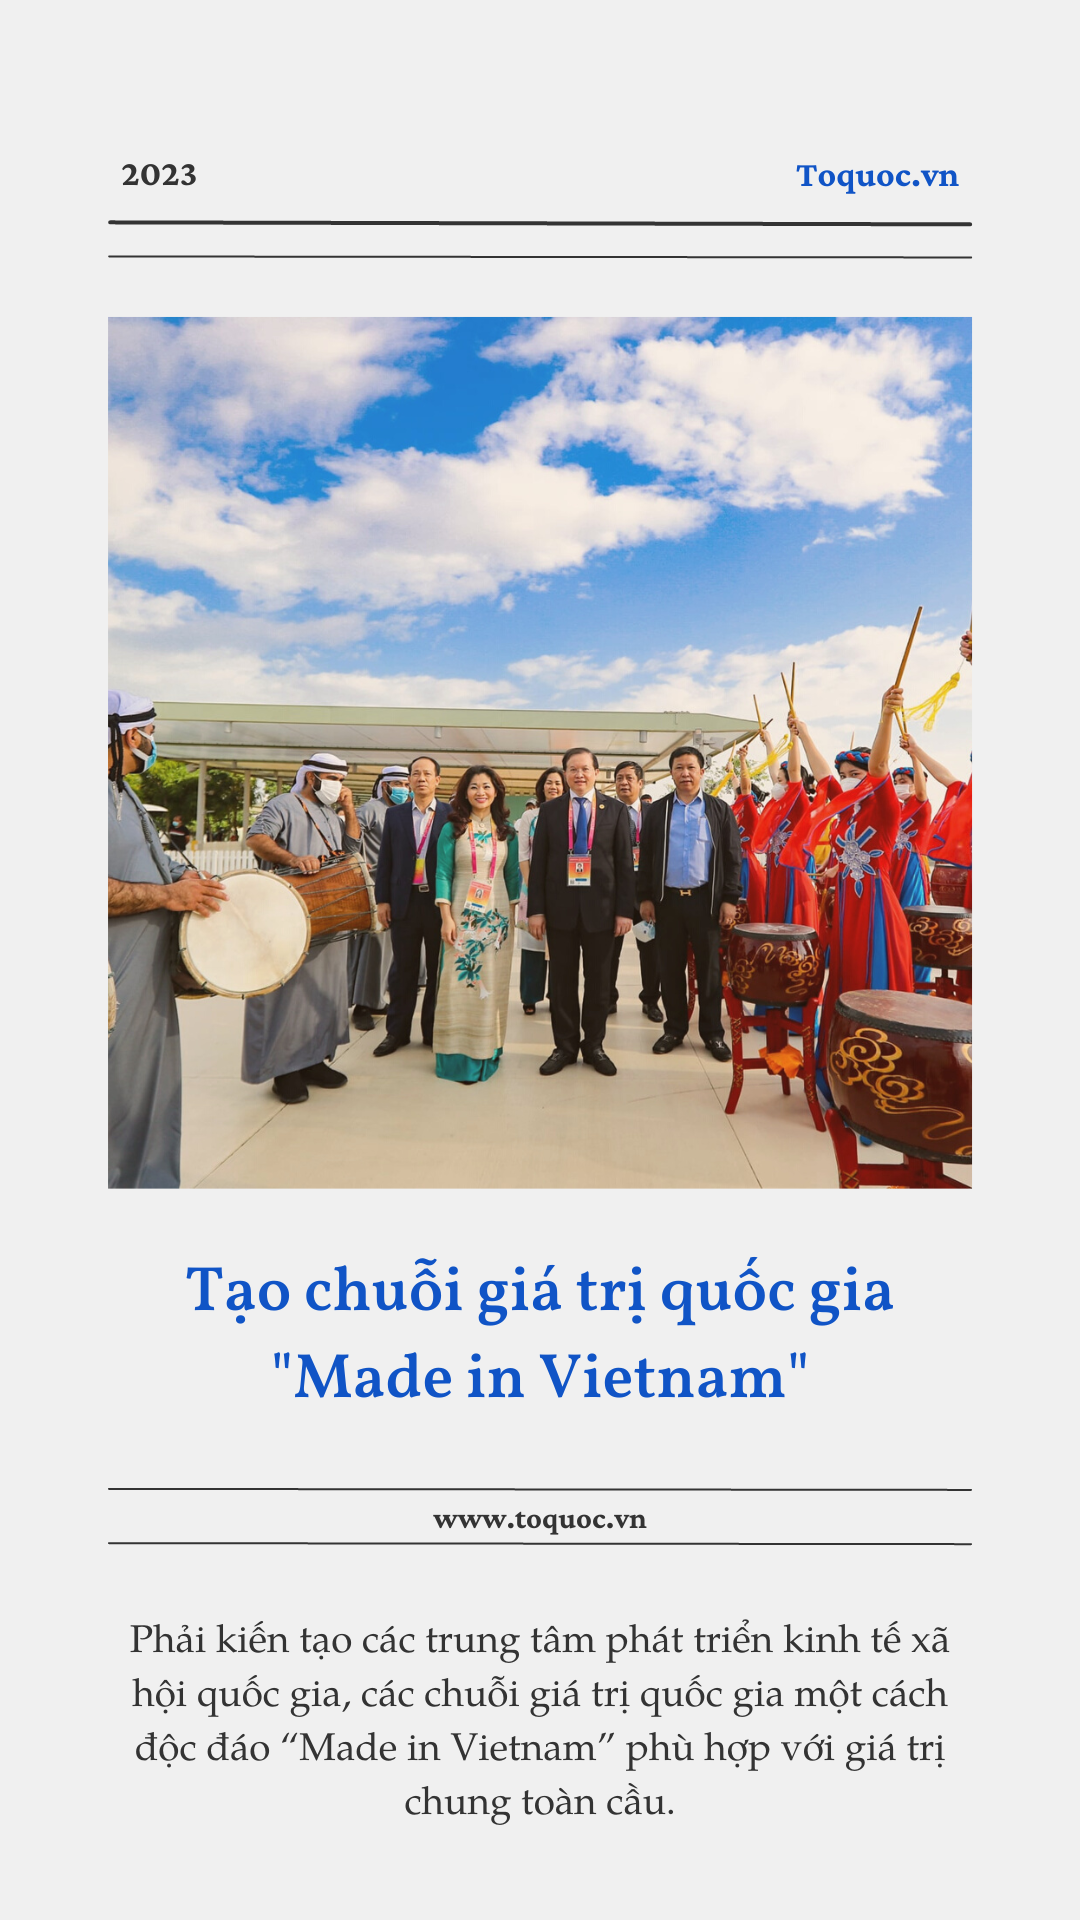 Tổ quốc trên đường văn hóa phát triển Việt Nam - Ảnh 2.